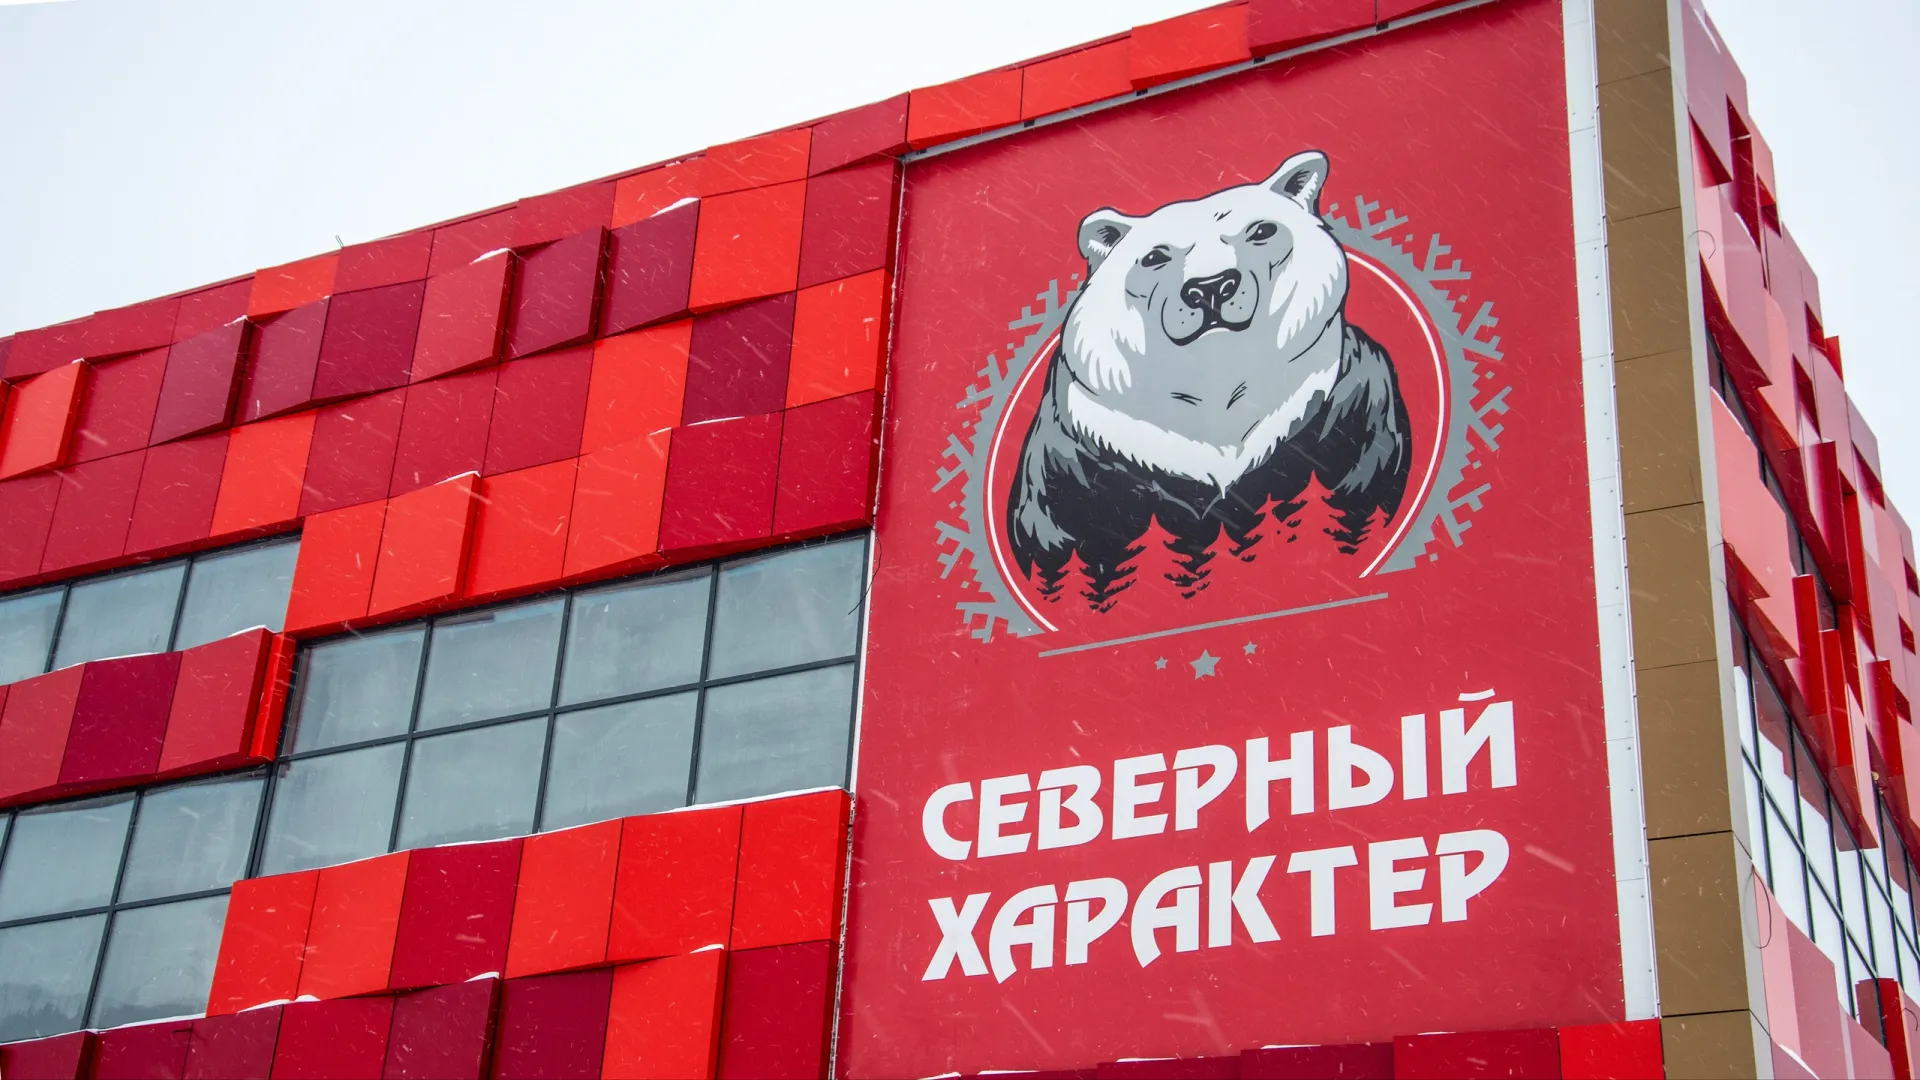 На Ямале открываются спортивные центры «Северный характер». Фото: Юрий Здебский / АНО «Ямал-Медиа»